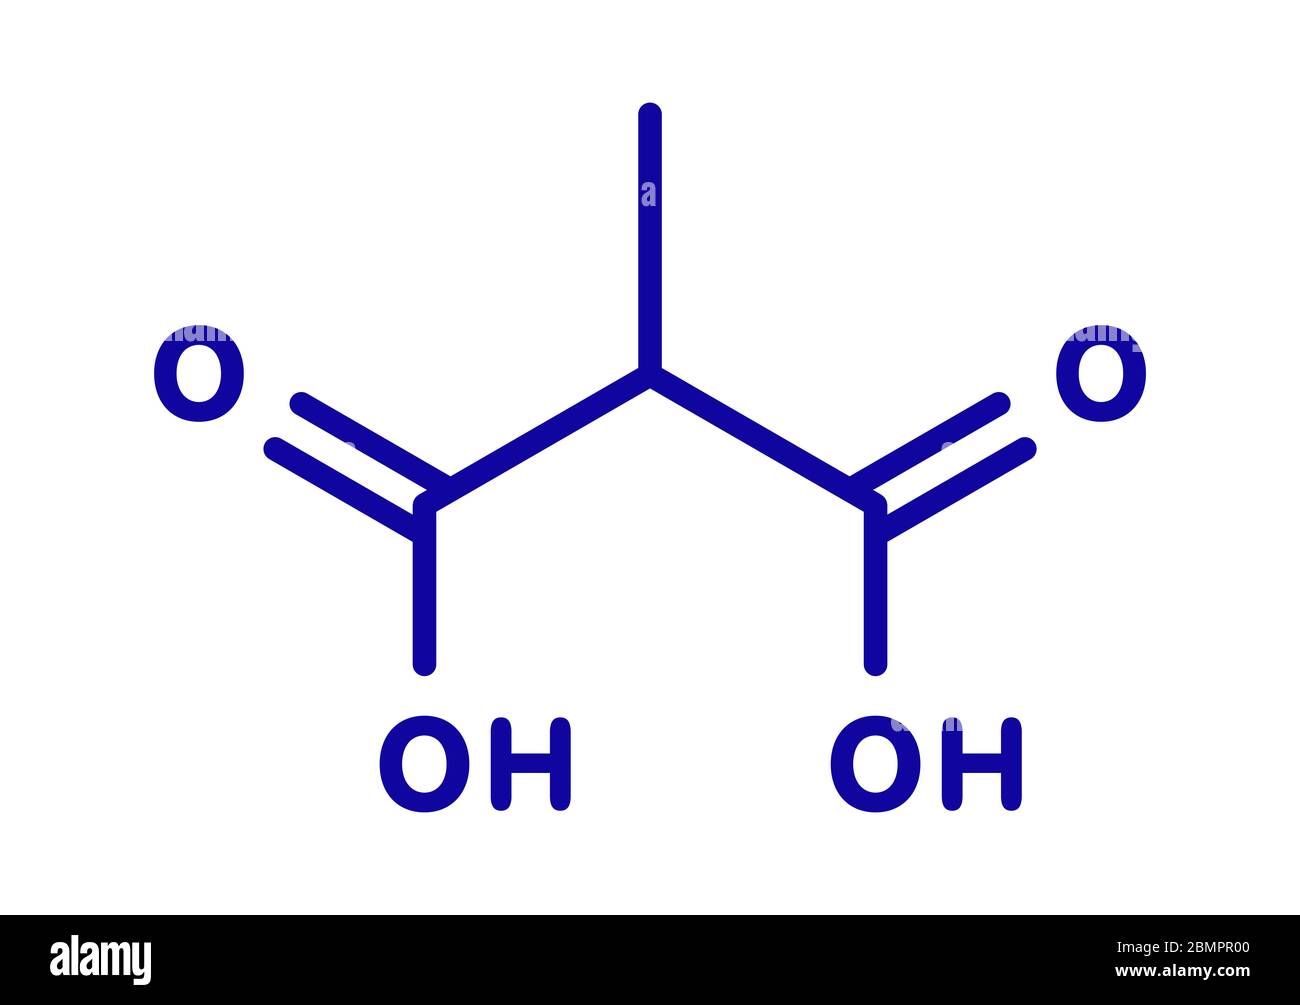 Methylmalonic acid molecule. Increased plasma levels may indicate vitamin B12 deficiency. Skeletal formula. Stock Photo